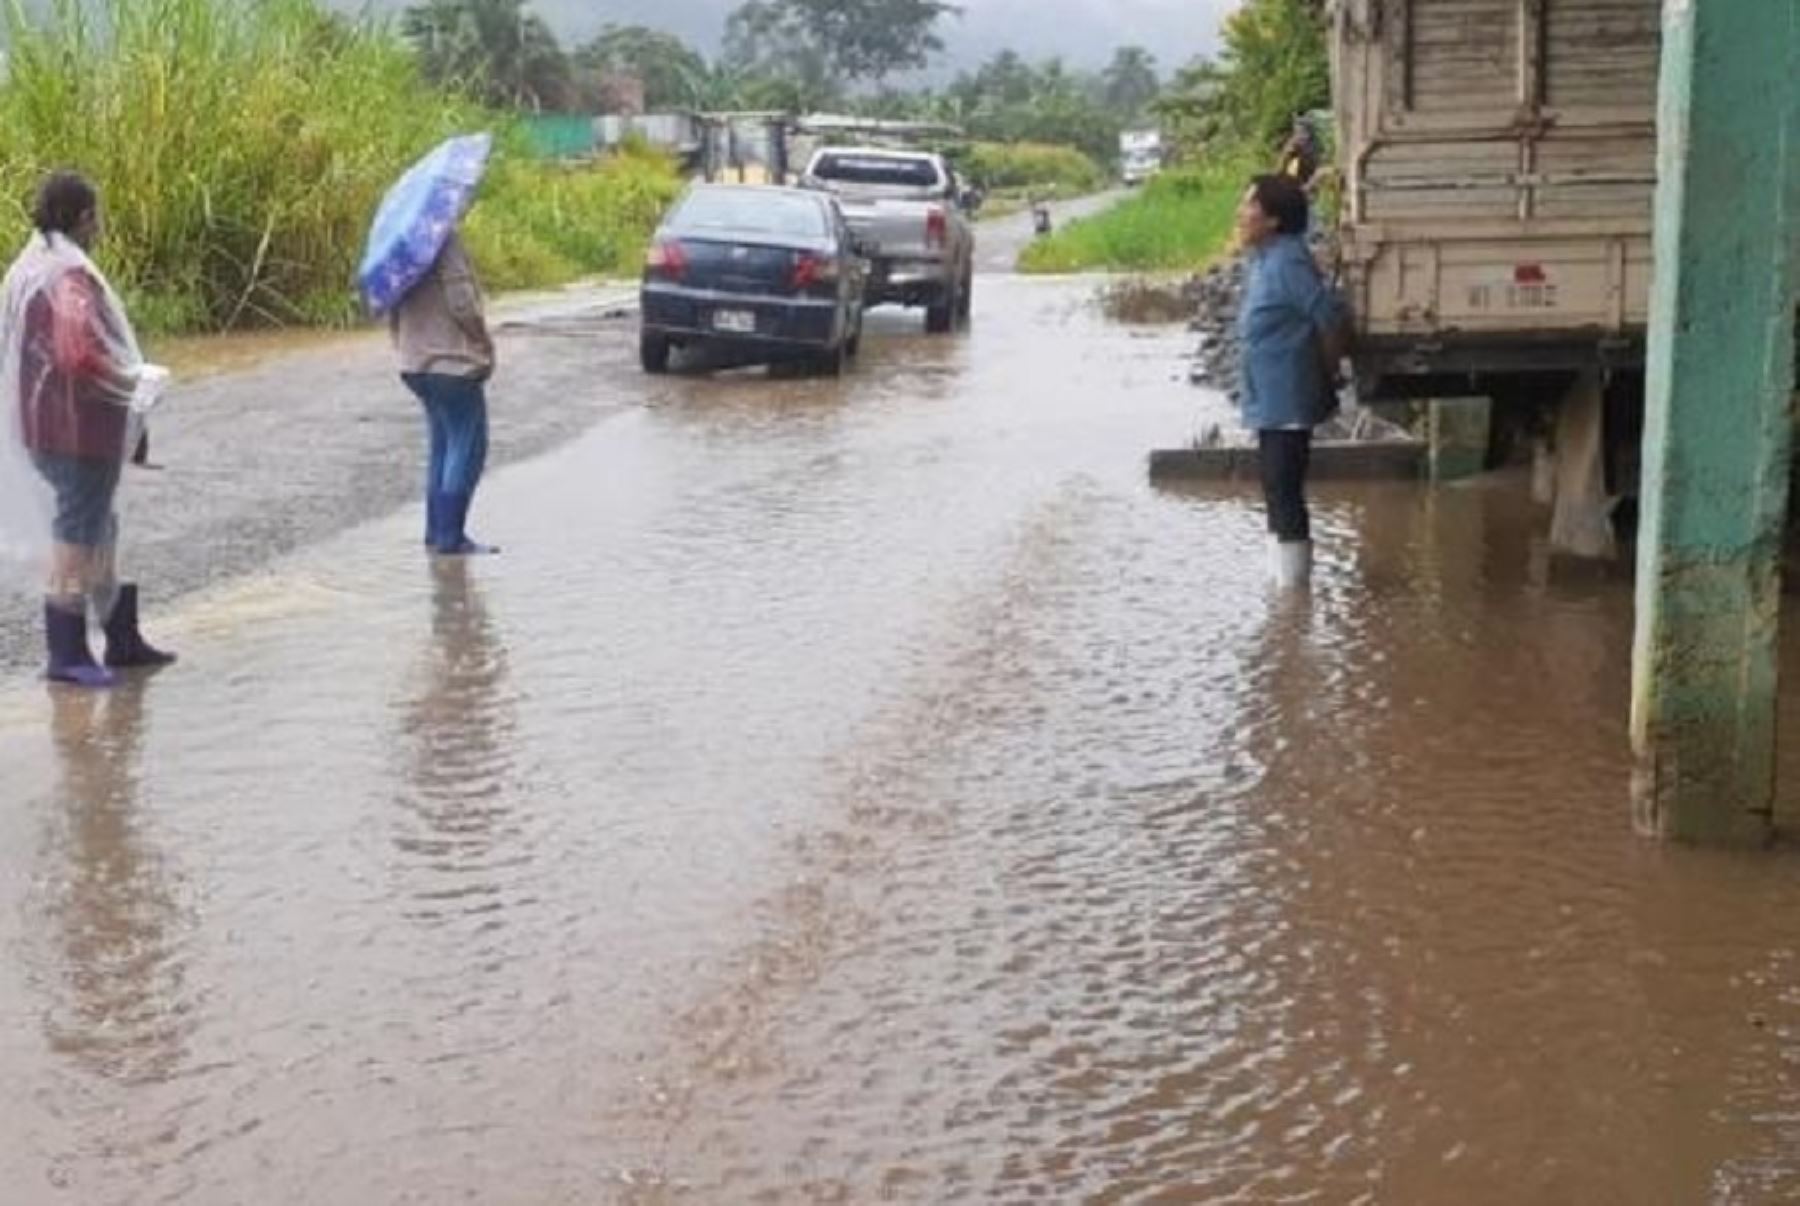 Un total de 101 viviendas y 303 personas afectadas dejaron hasta ahora intensas lluvias en ocho sectores del distrito de Zarumilla, informó el Centro de Operaciones de Emergencia Regional (COER) de Tumbes.